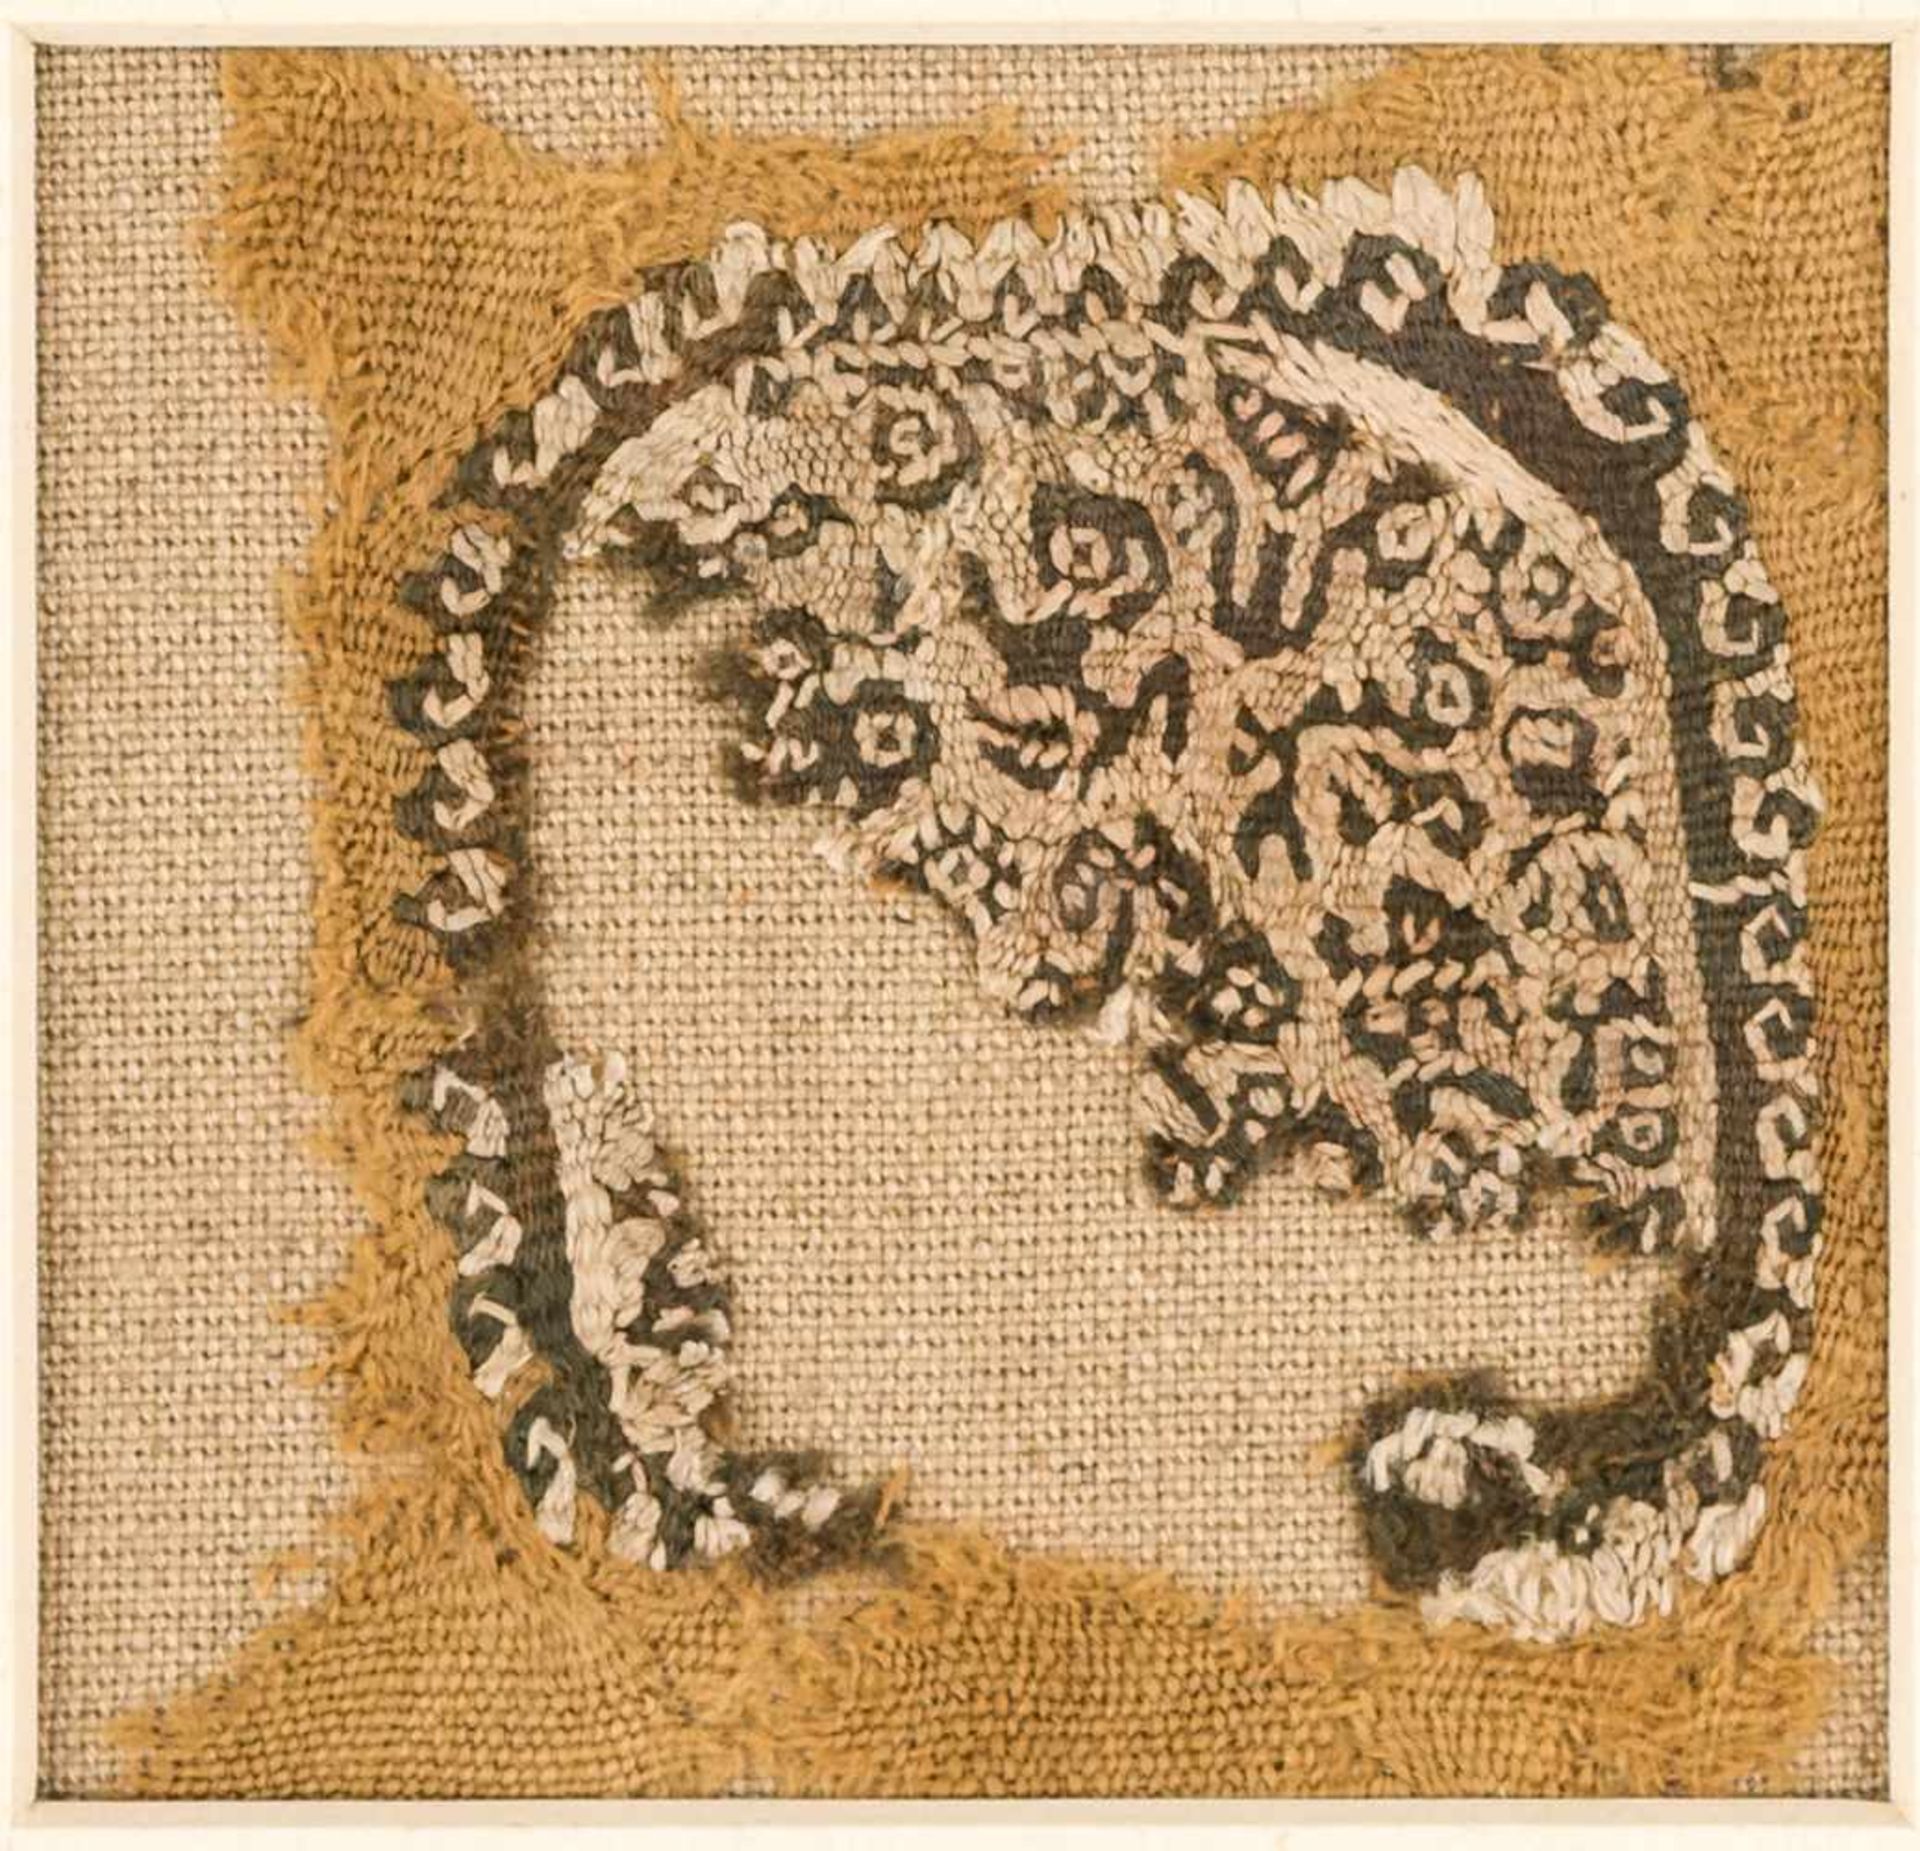 Koptisches TextilfragmentWirkerei, Leinen / Wolle, wohl 3.-8. Jh.ca. 12 x 13 cmProvenienz: Dr.